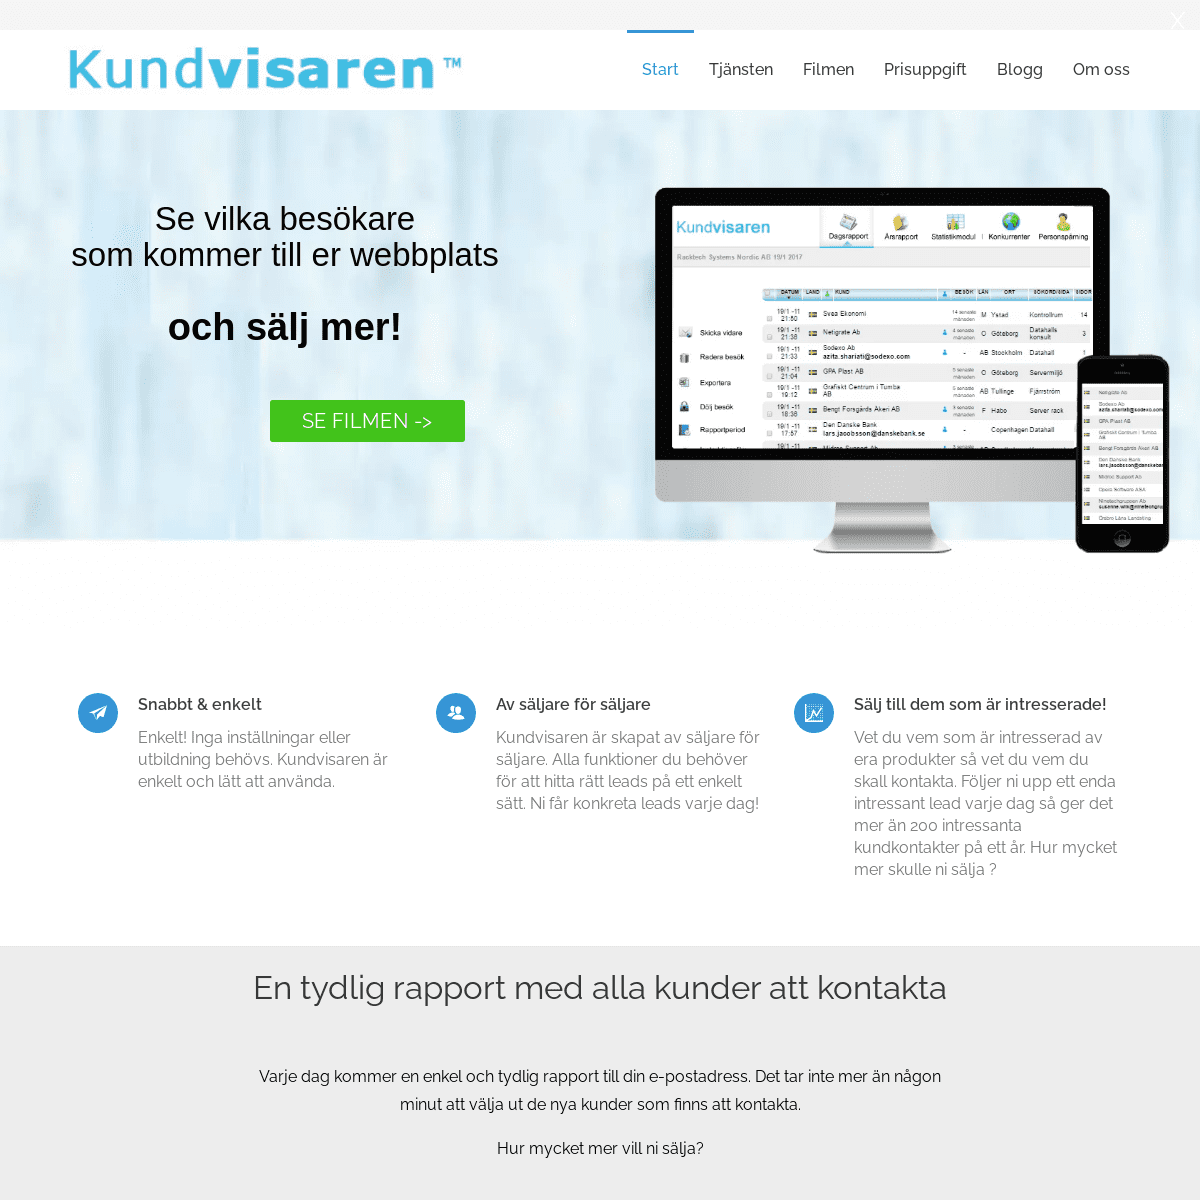 A complete backup of https://kundvisaren.se